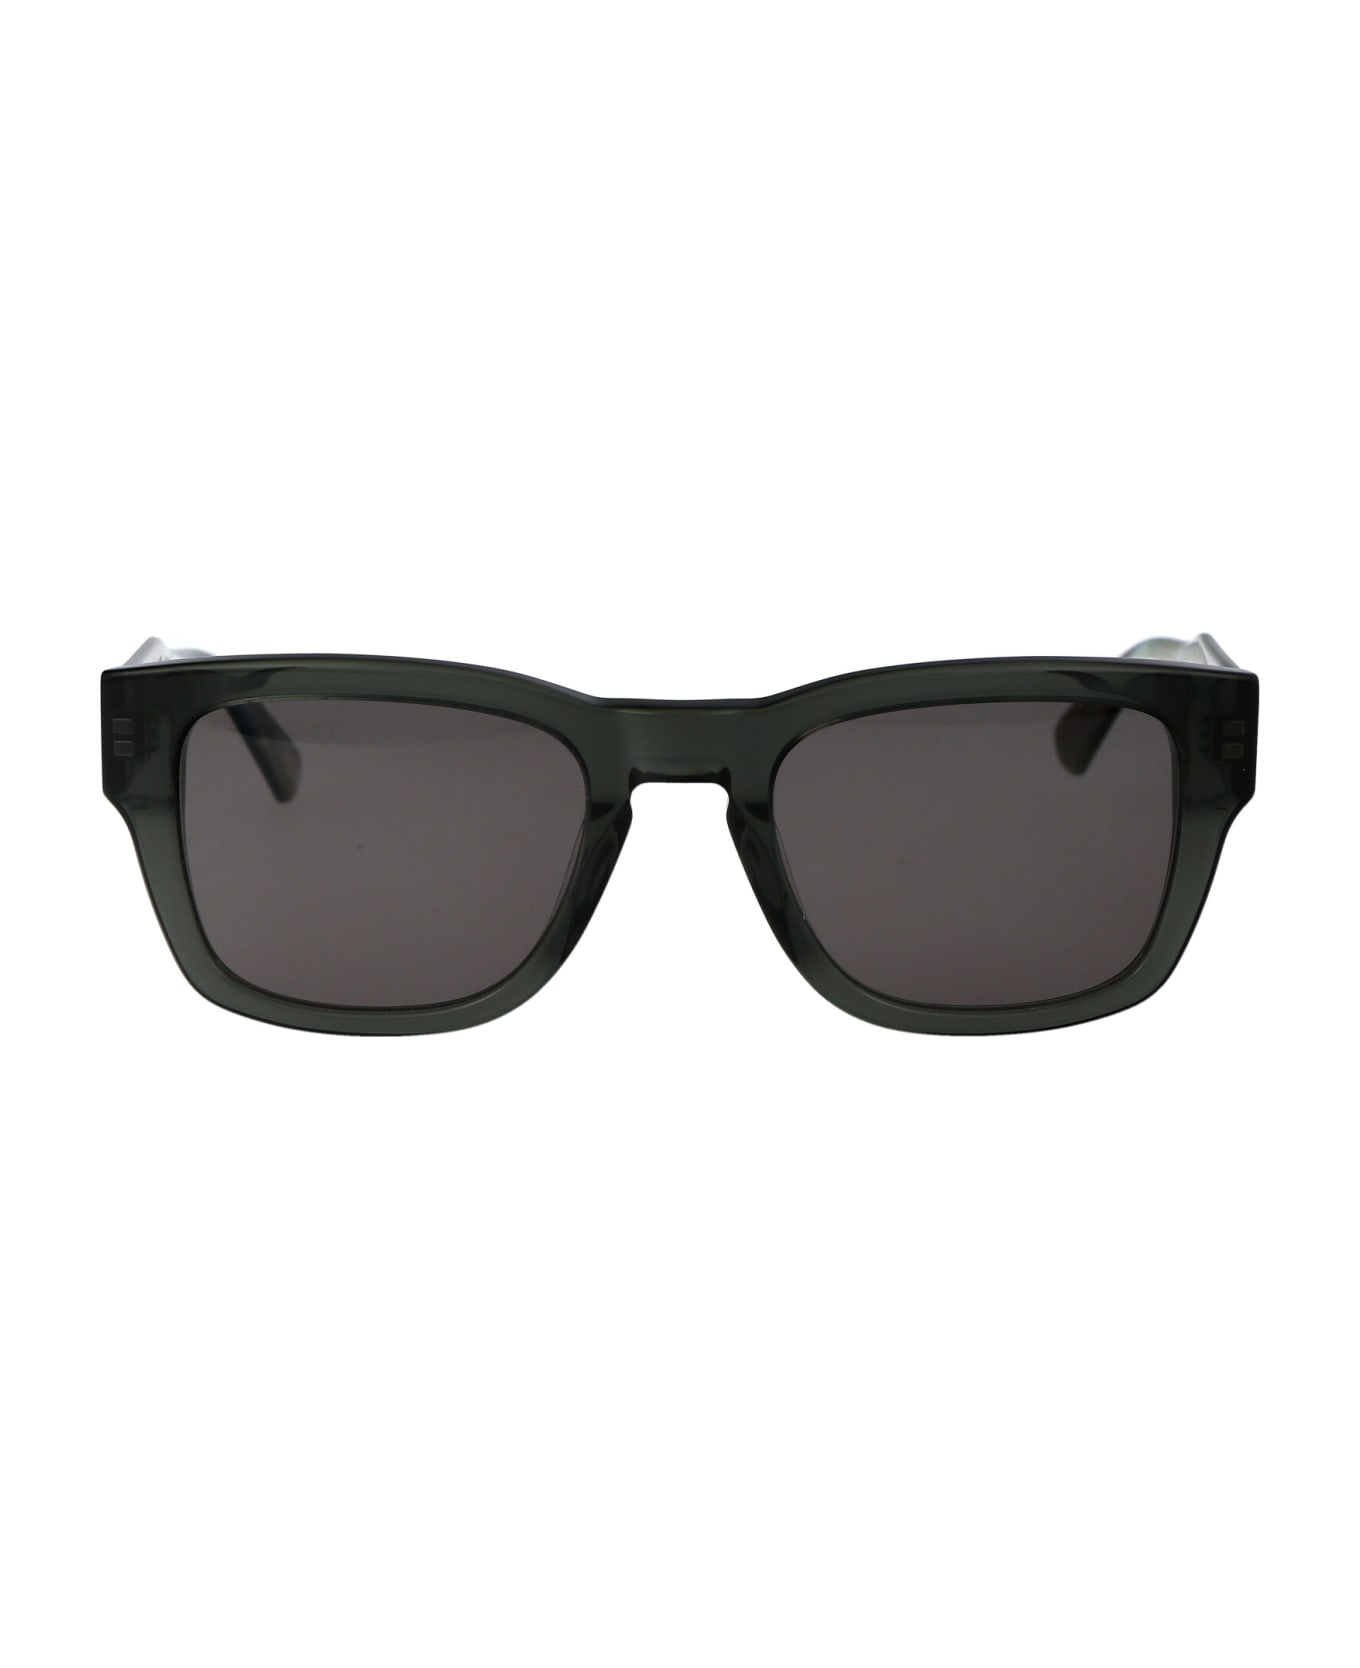 Calvin Klein Ck23539s Sunglasses - 035 GREY サングラス